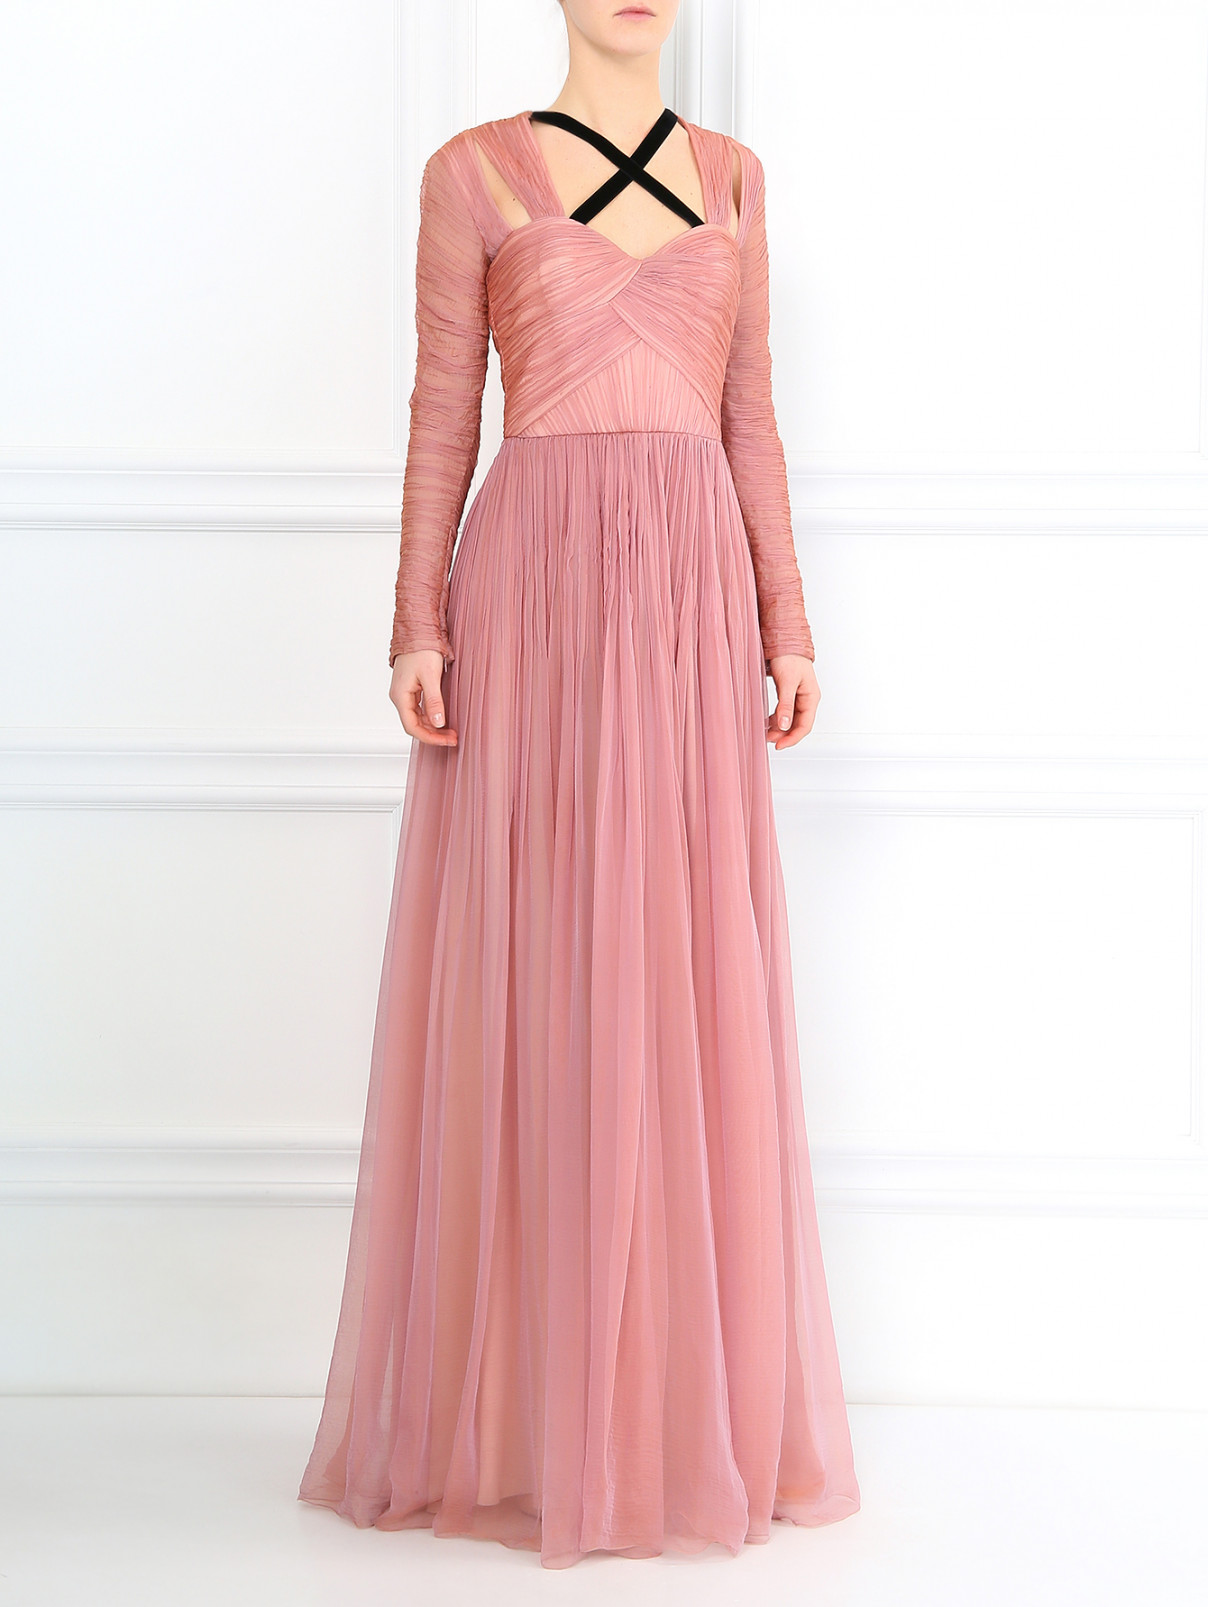 Платье-макси из шелка с драпировками Andrew GN  –  Модель Общий вид  – Цвет:  Розовый